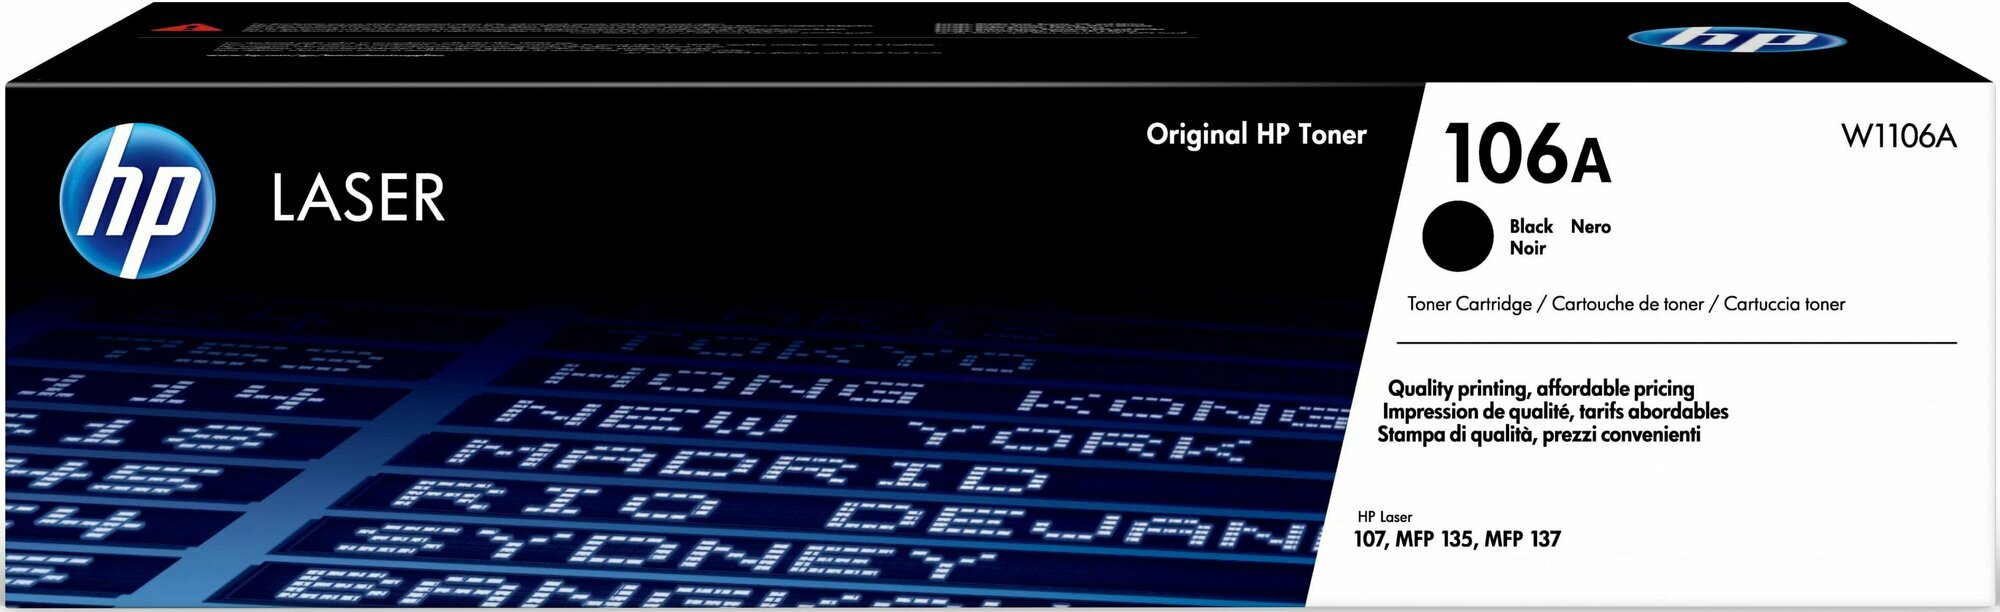 Тонер-картридж HP 106A W1106A чер. для 107/MFP 135/137